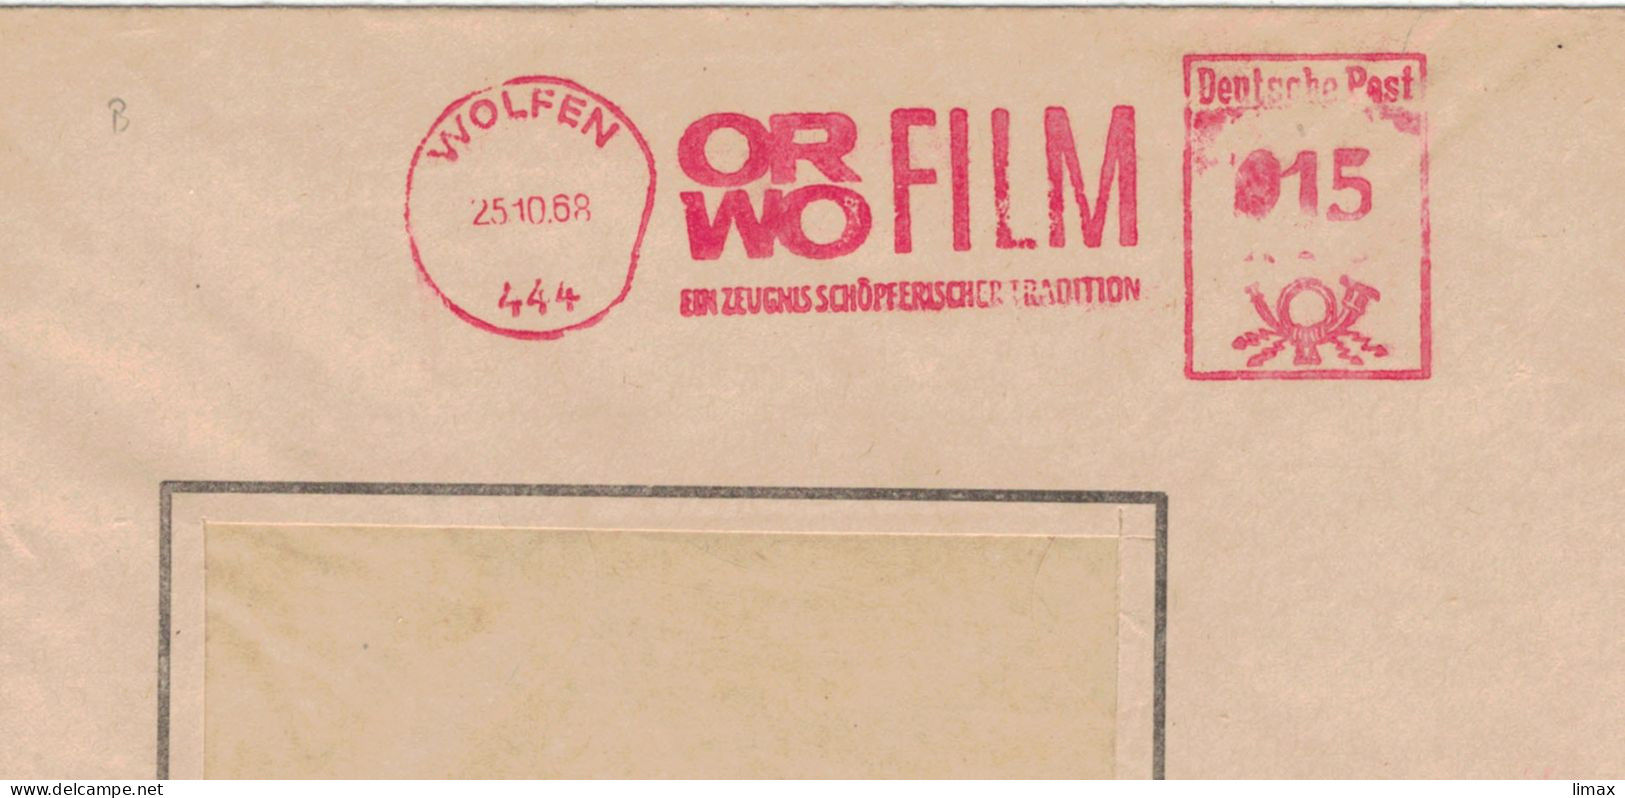 444 Wolfen 1968 Zeugnis Schöpferischer Tradition ORWO Film - Ehem. IG Farben - 1945 Patente An Eastman Kodak - Frankeermachines (EMA)